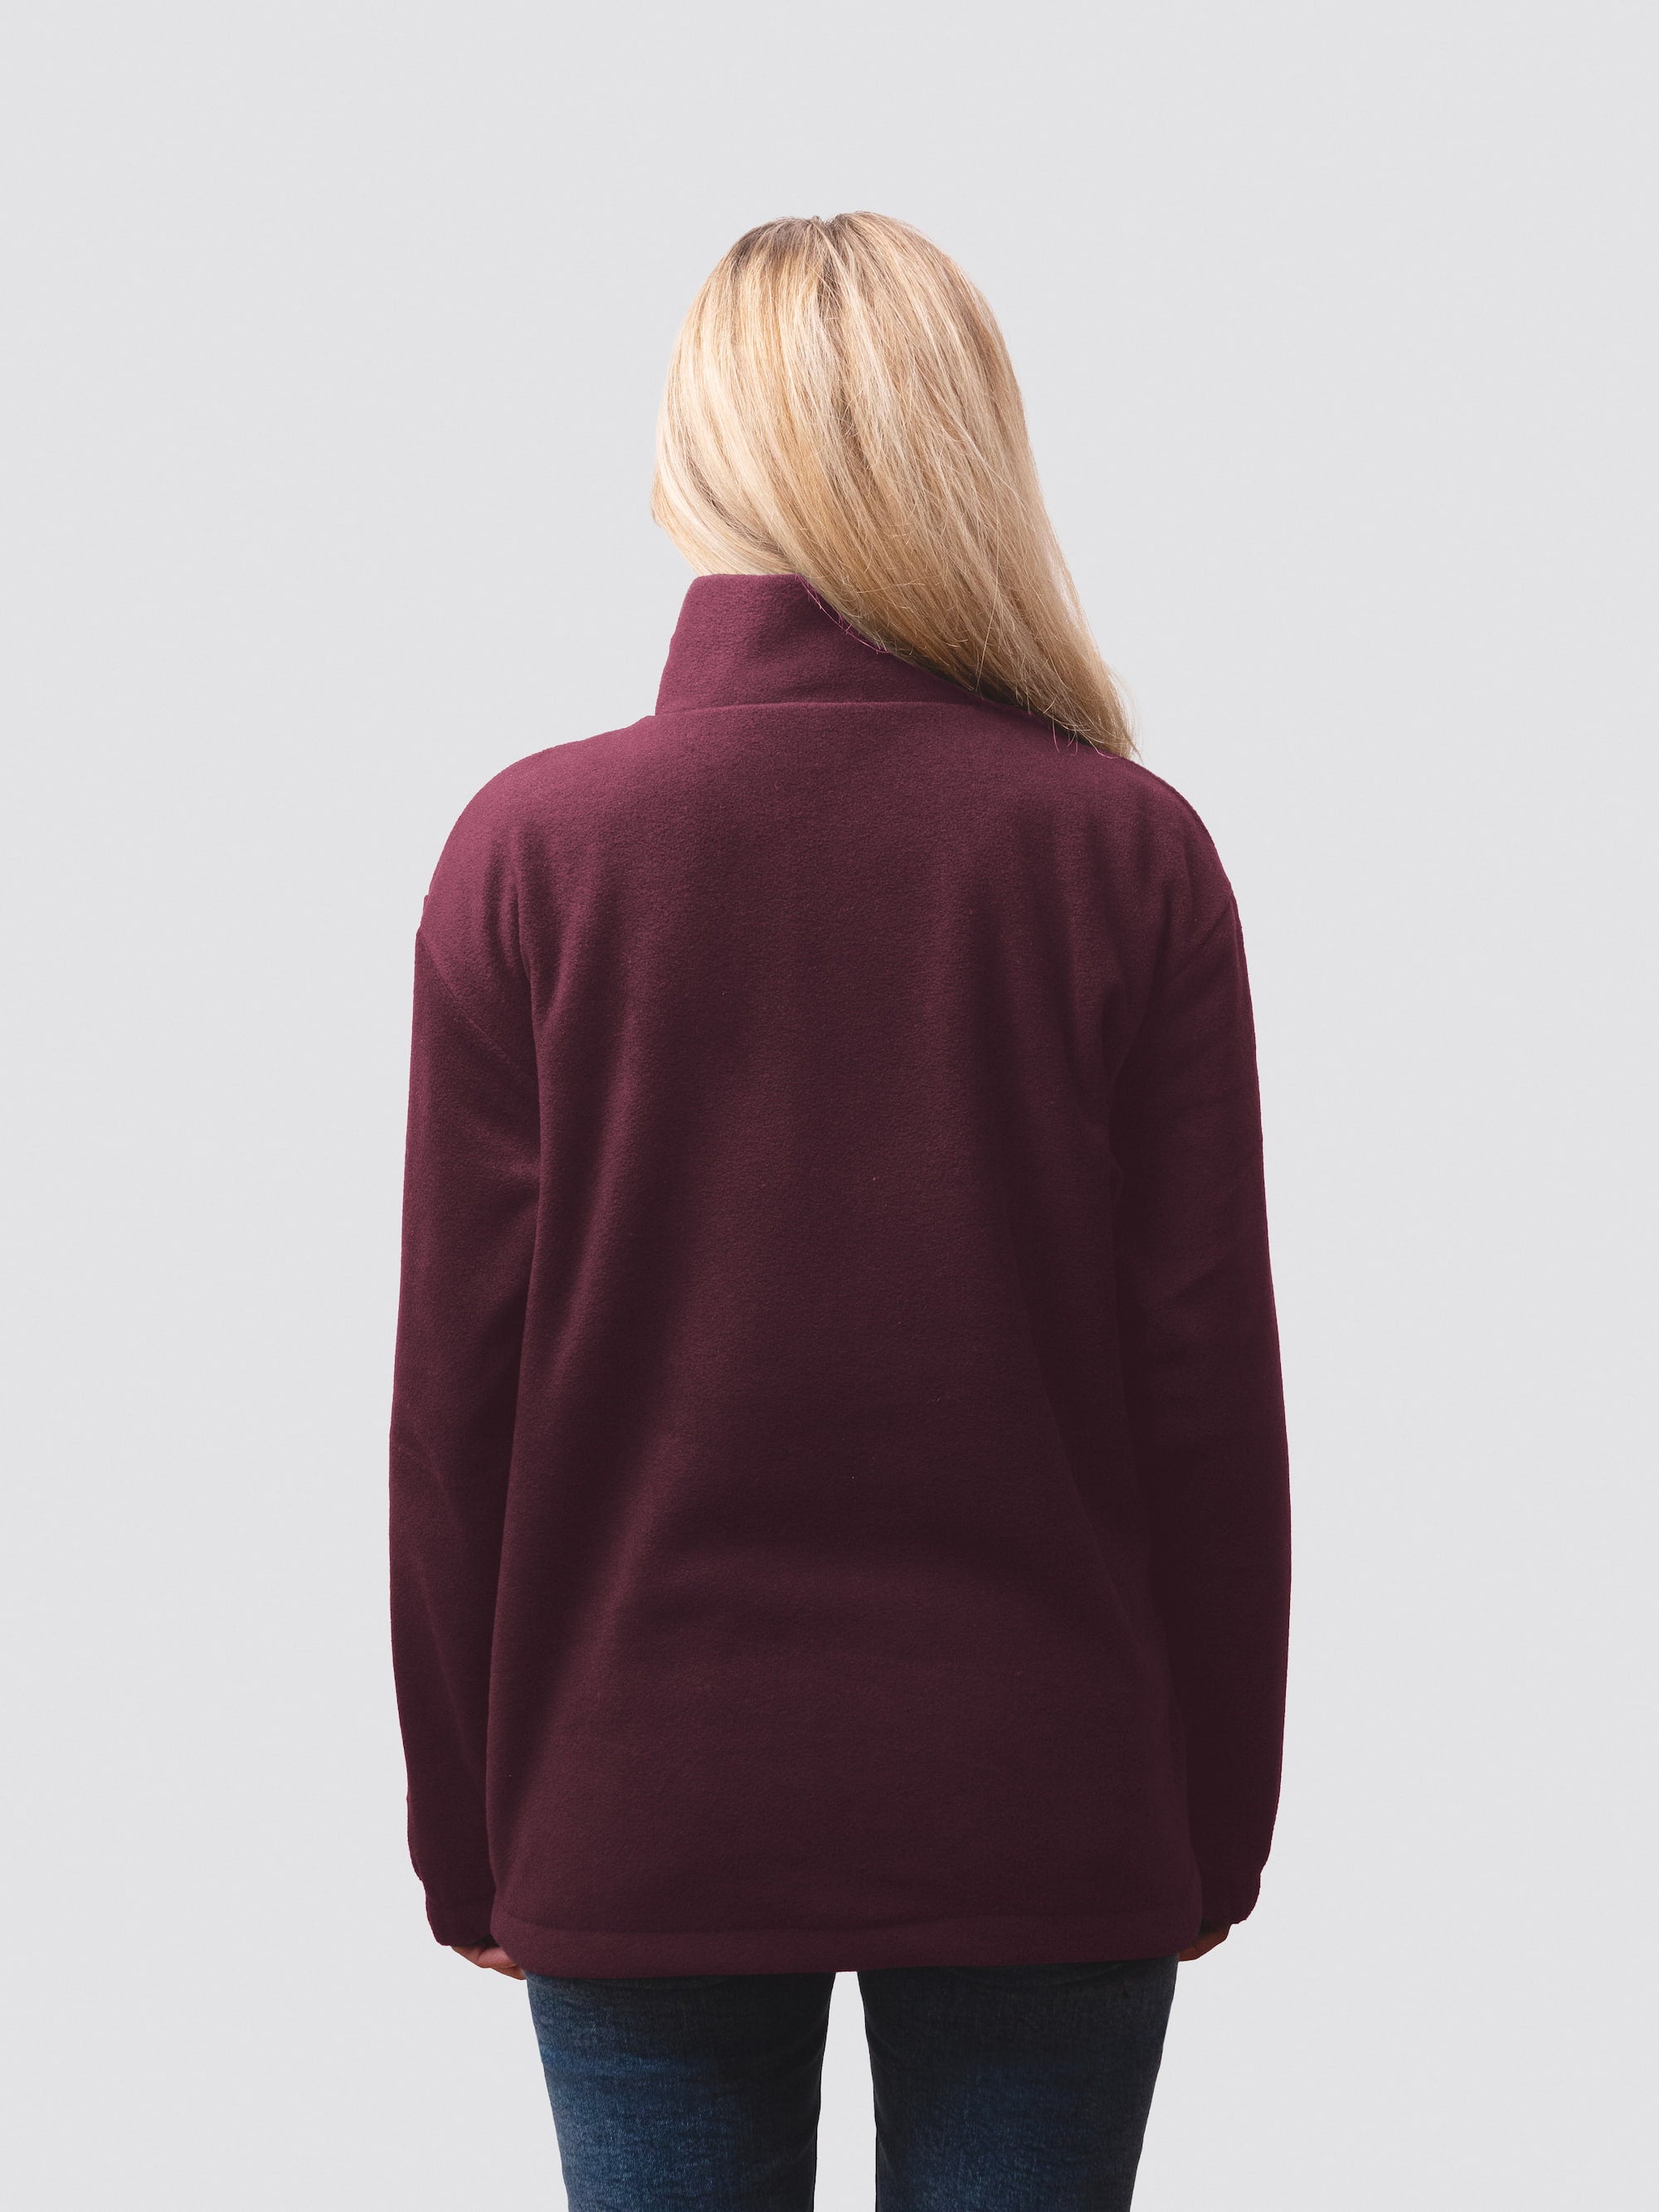 Blonde student model, wearing a burgundy 1/4 zip fleece